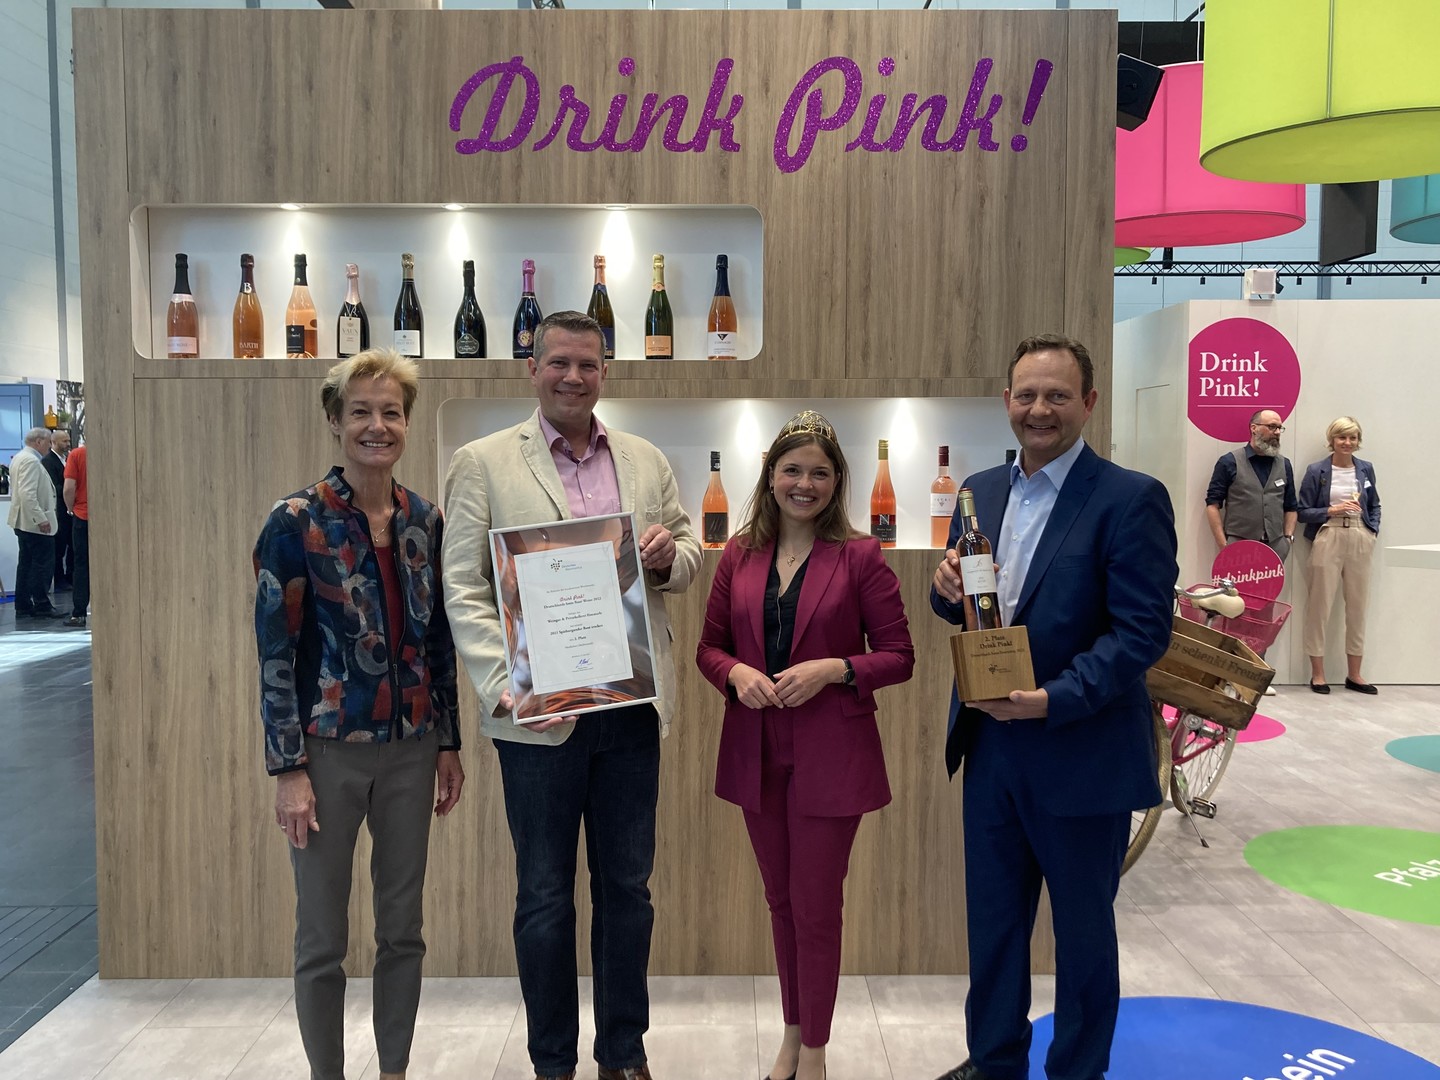 Monika Reule (Geschftsfhrerin DWI), Philipp Milke (Kellermeister), Sina Erdrich (Deutsche Weinknigin) und Siegbert Bimmerle sind sichtlich stolz auf die Auszeichnung bei Drink Pink 2022 (Wein) und gehren somit zu den besten deutschen Ross.